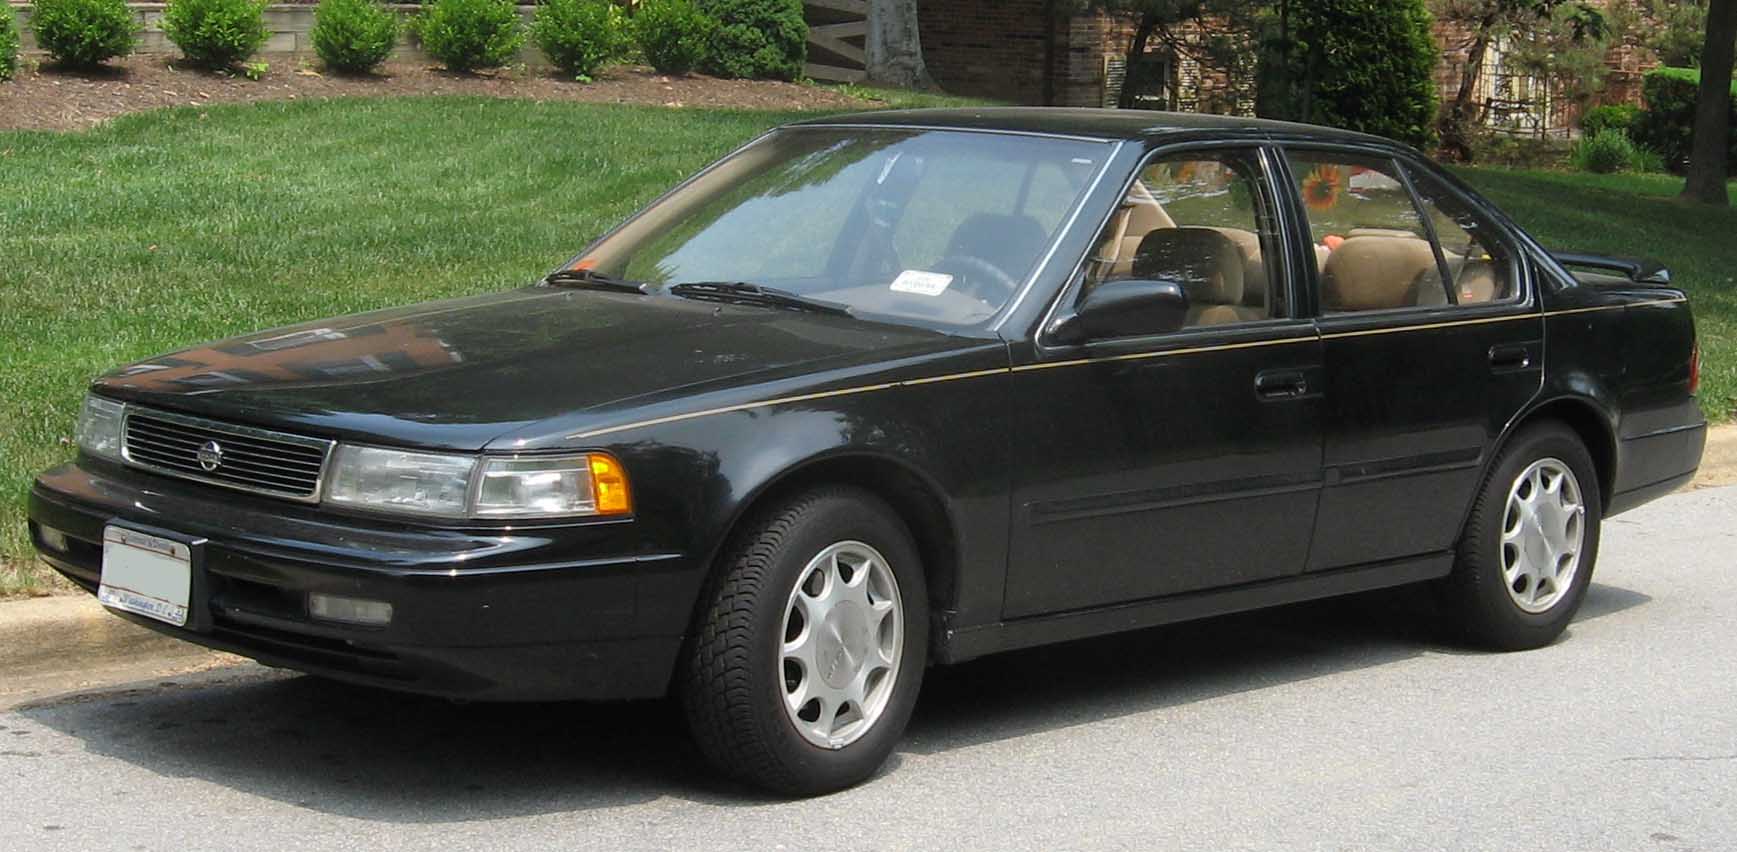 Nissan Maxima 1994